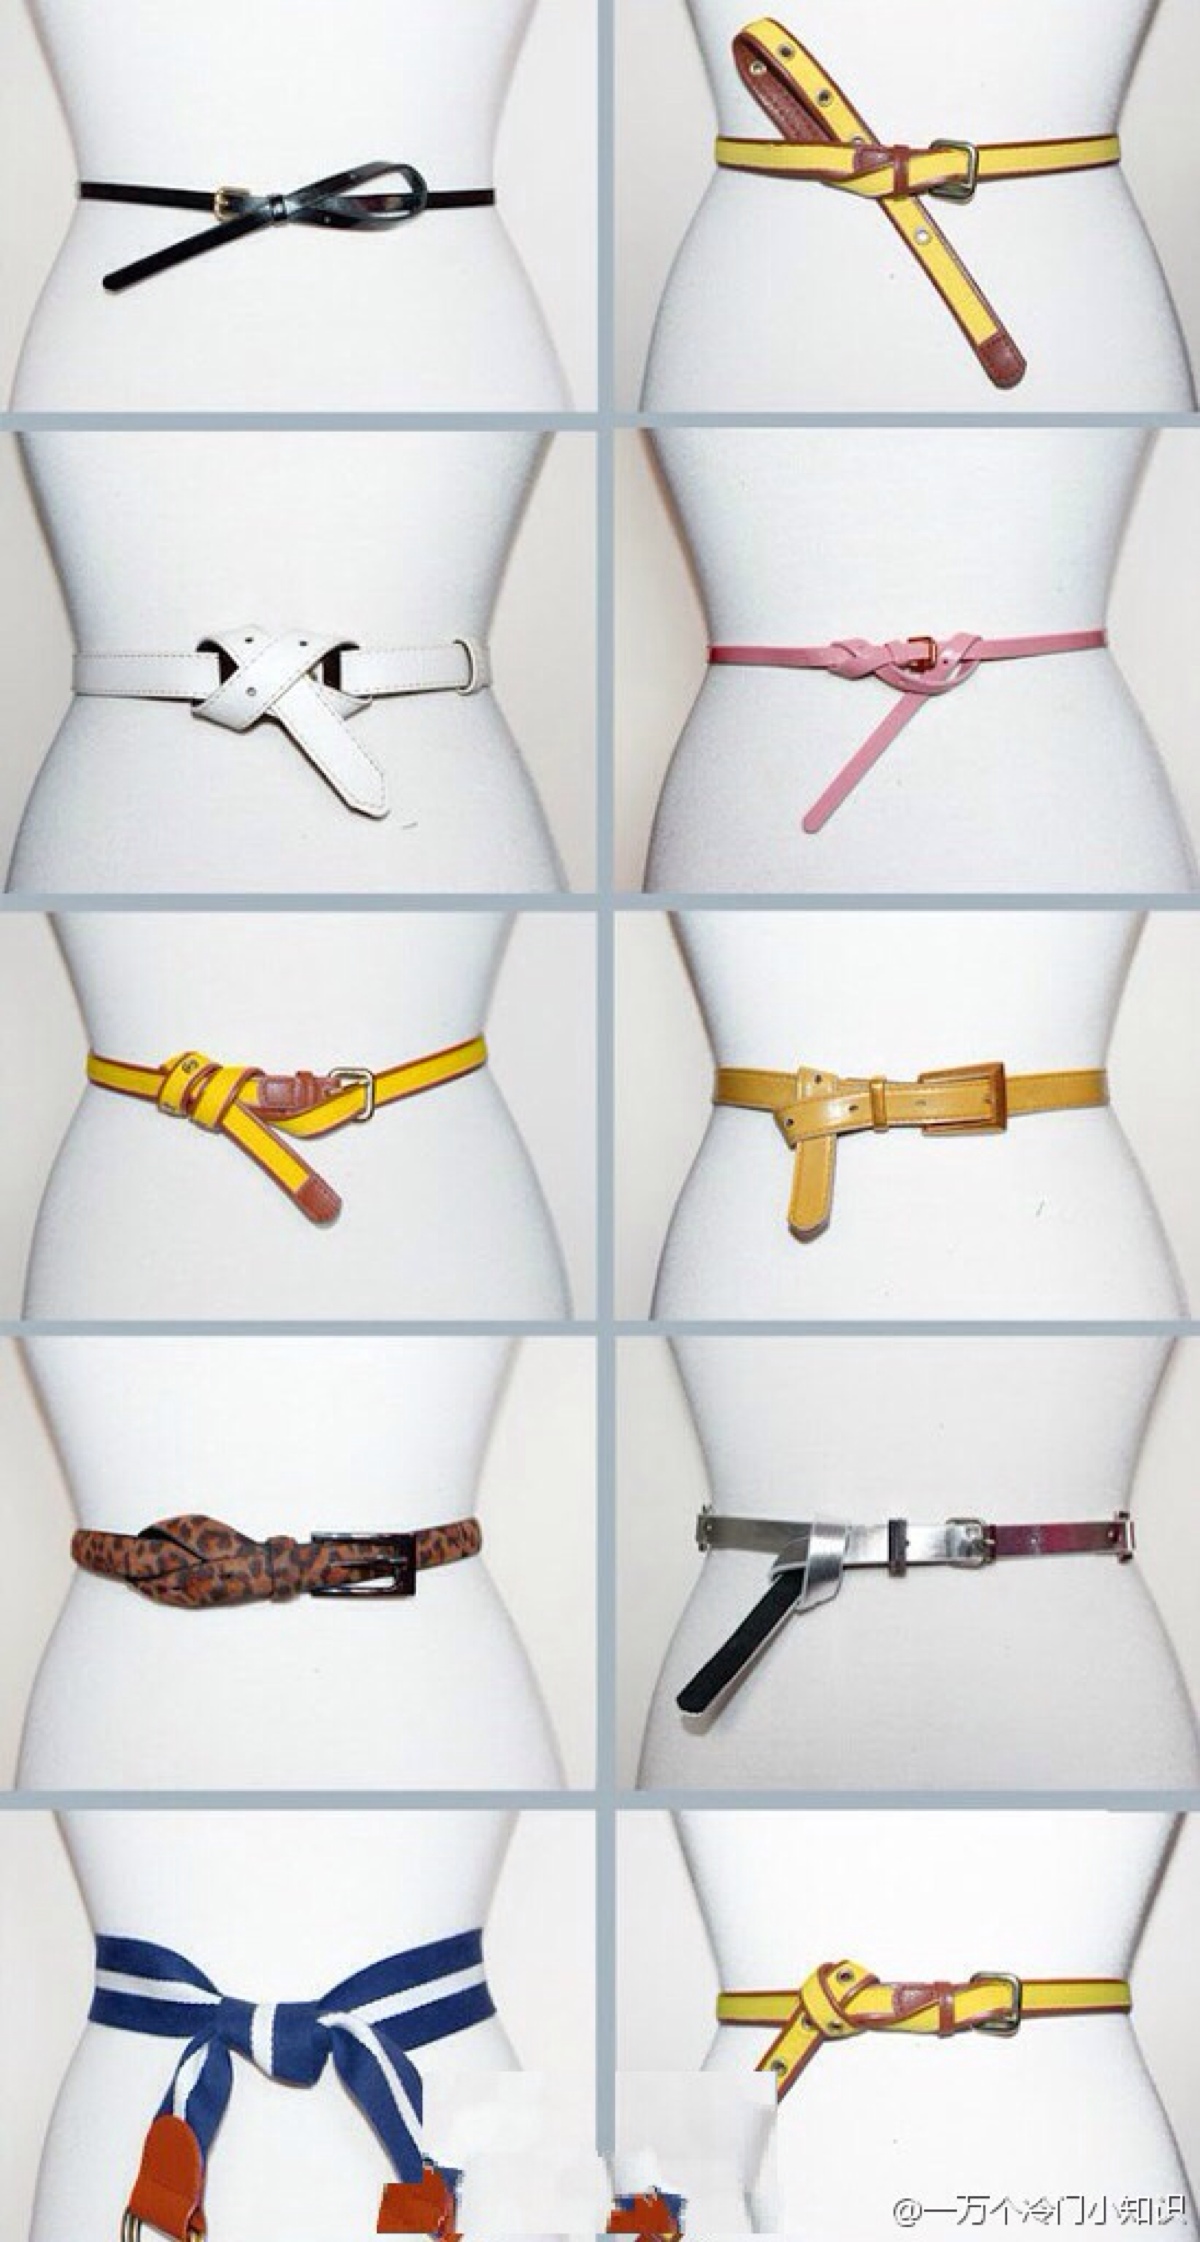 柔道服腰带系法图片